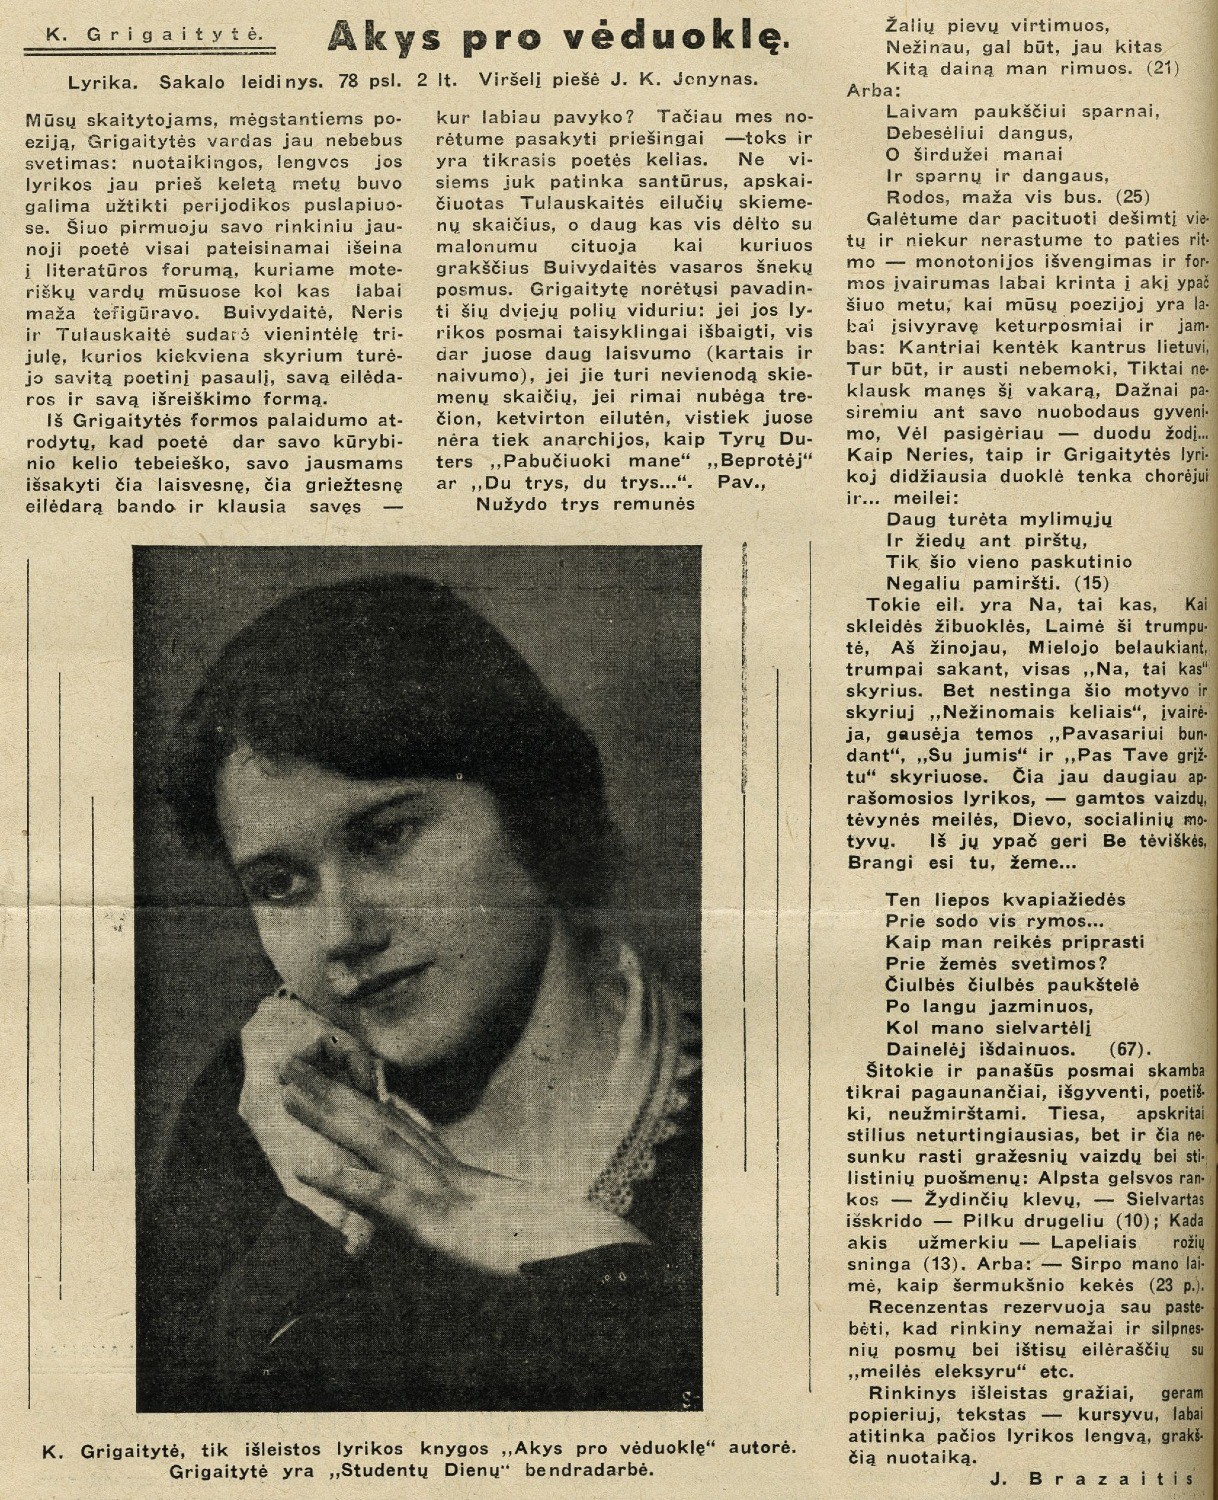 K. Grigaitytė. Akys pro vėduoklę: [rec.] / J. Brazaitis. – Rec. kn.: Akys pro vėduoklę / K. Grigaitytė; viršelį piešė V. K. Jonynas. – Kaunas: Sakalo leid., 1937 // Studentų dienos. – 1937, rugs. 18, p. 6.